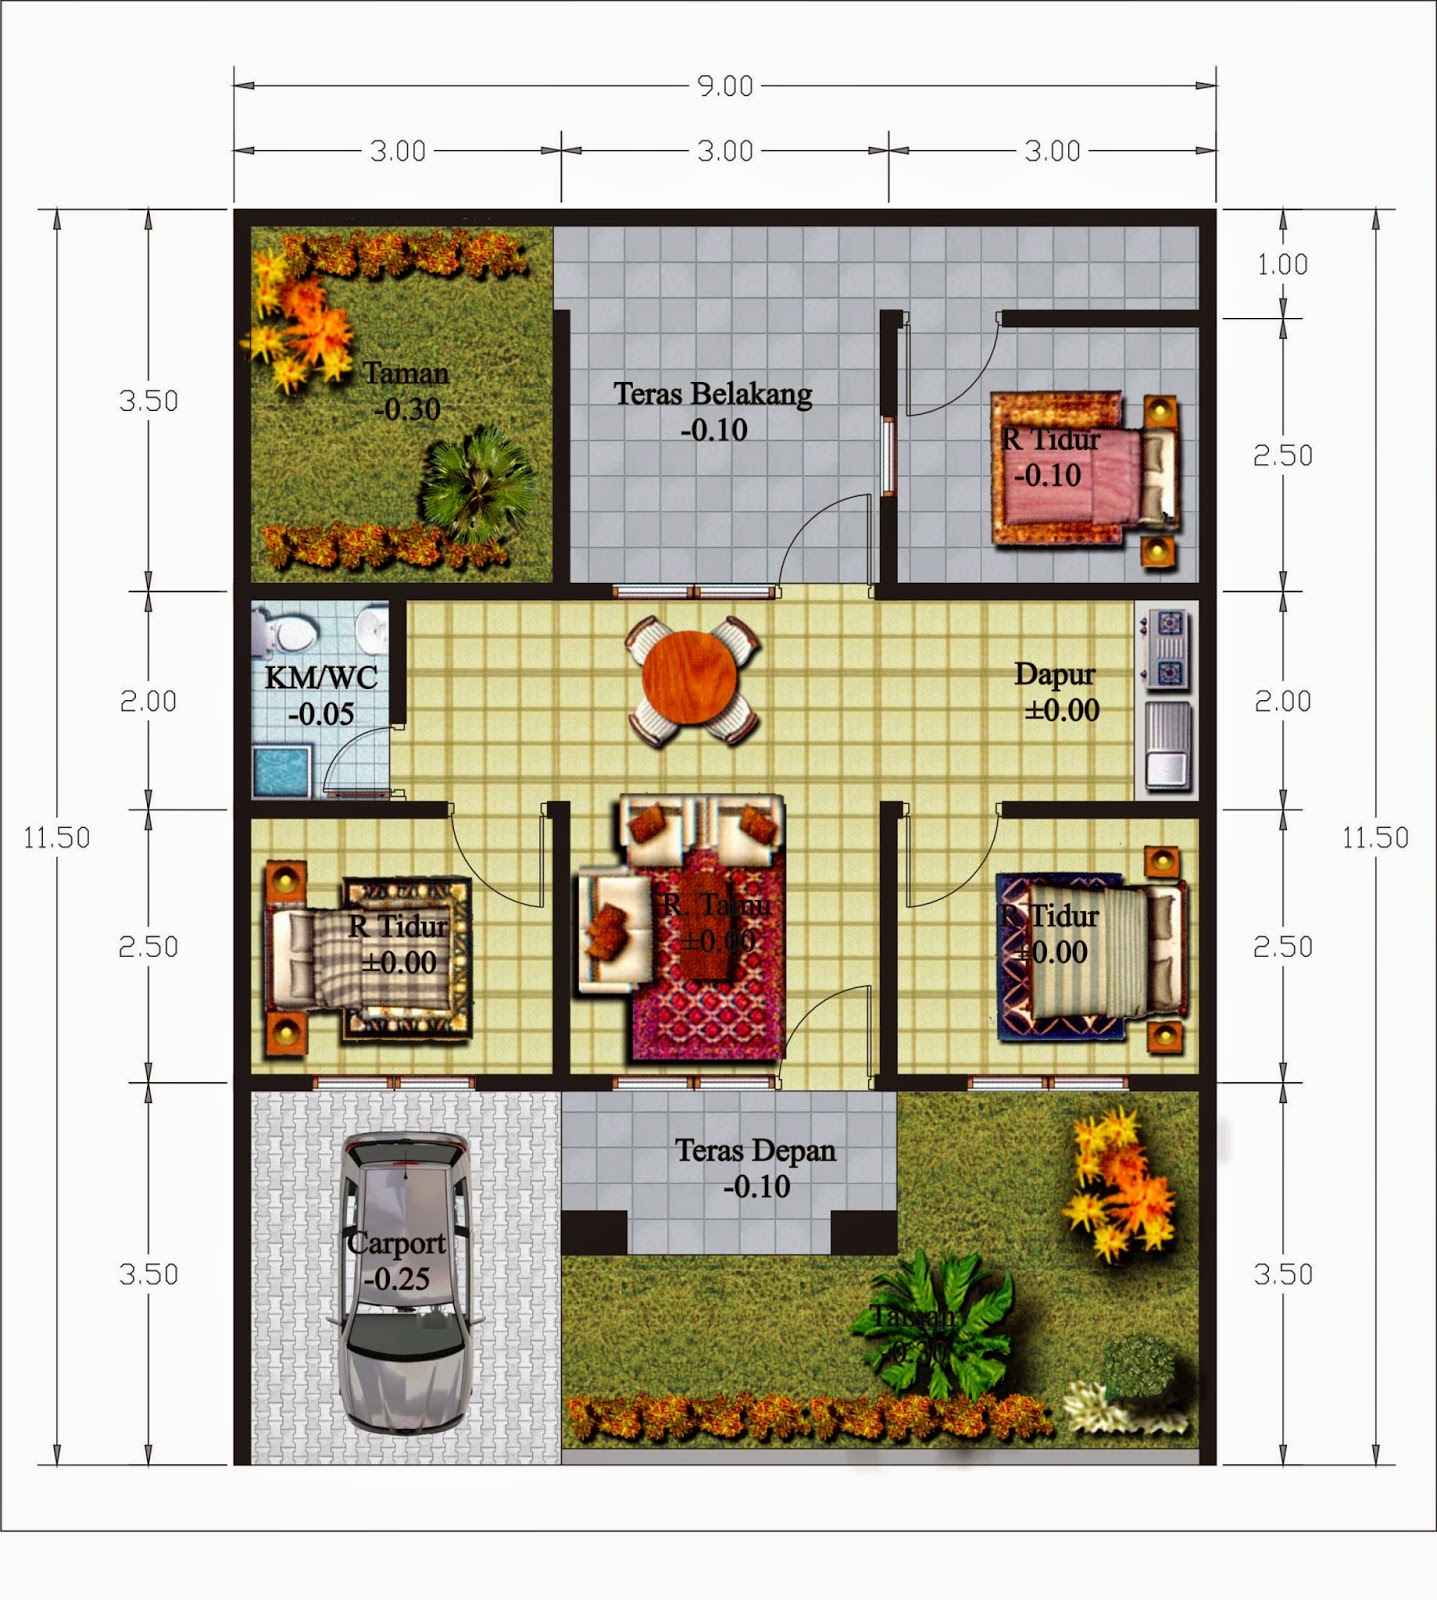 Denah Rumah Minimalis 1 Lantai Ukuran 10 X 15 | Desain Rumah Minimalis